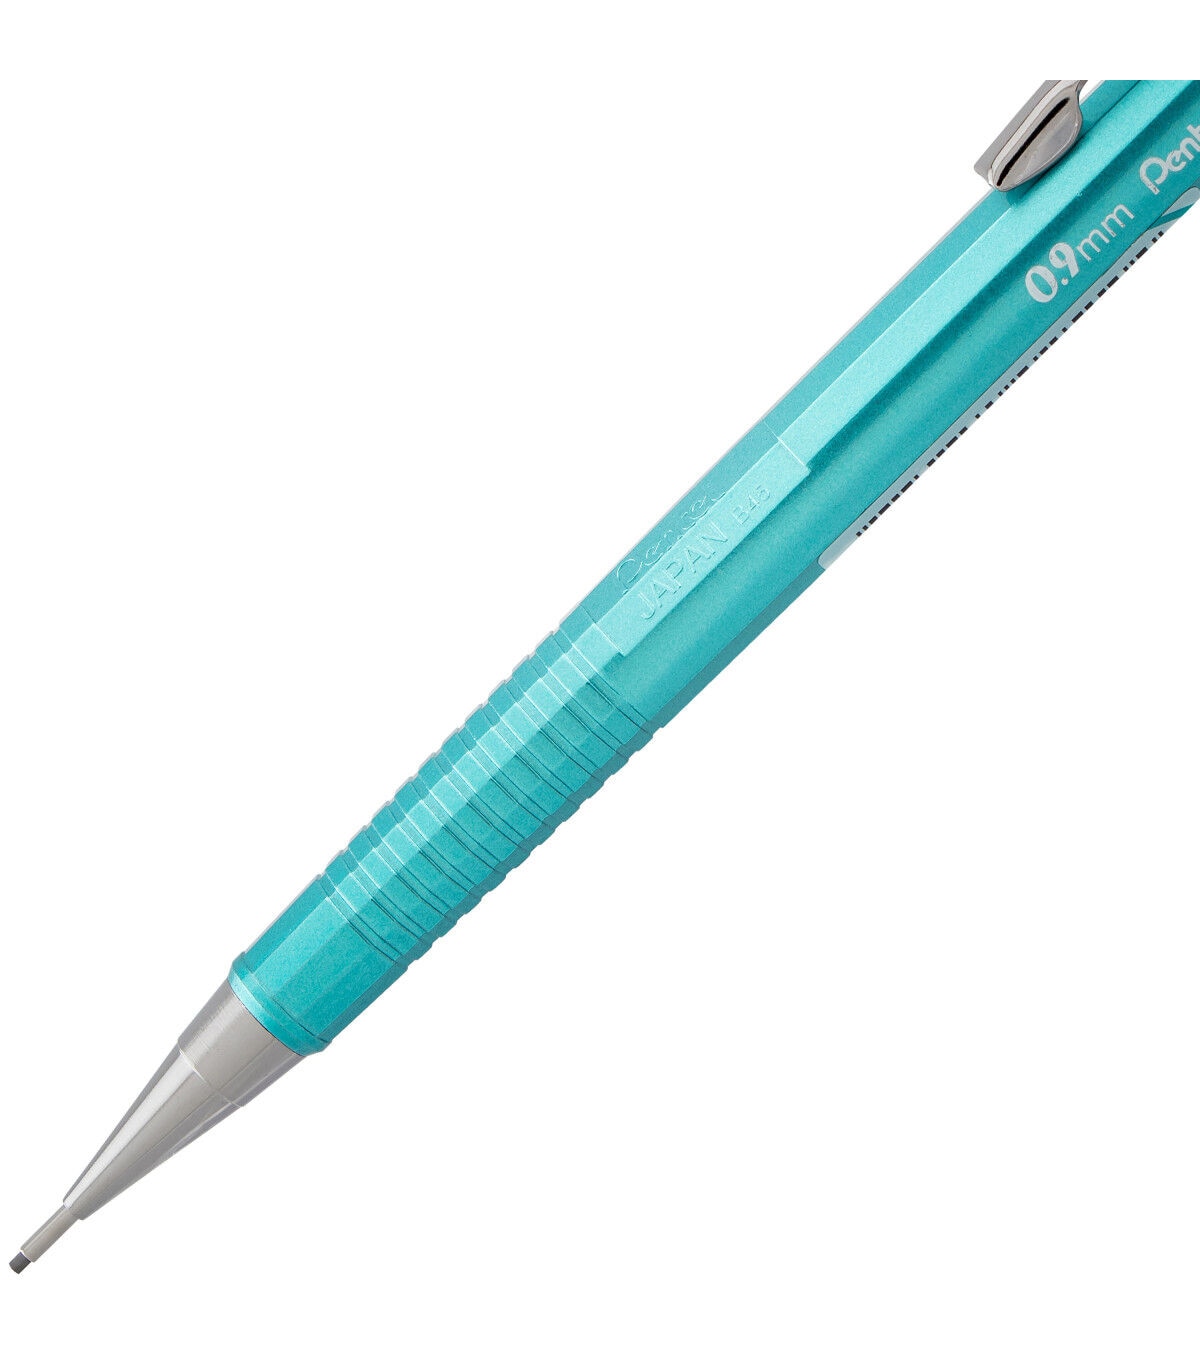 0.5mm HB Lead & Eraser Tip 3 Designs. Animal Print Novelty Mechanical Pencil 